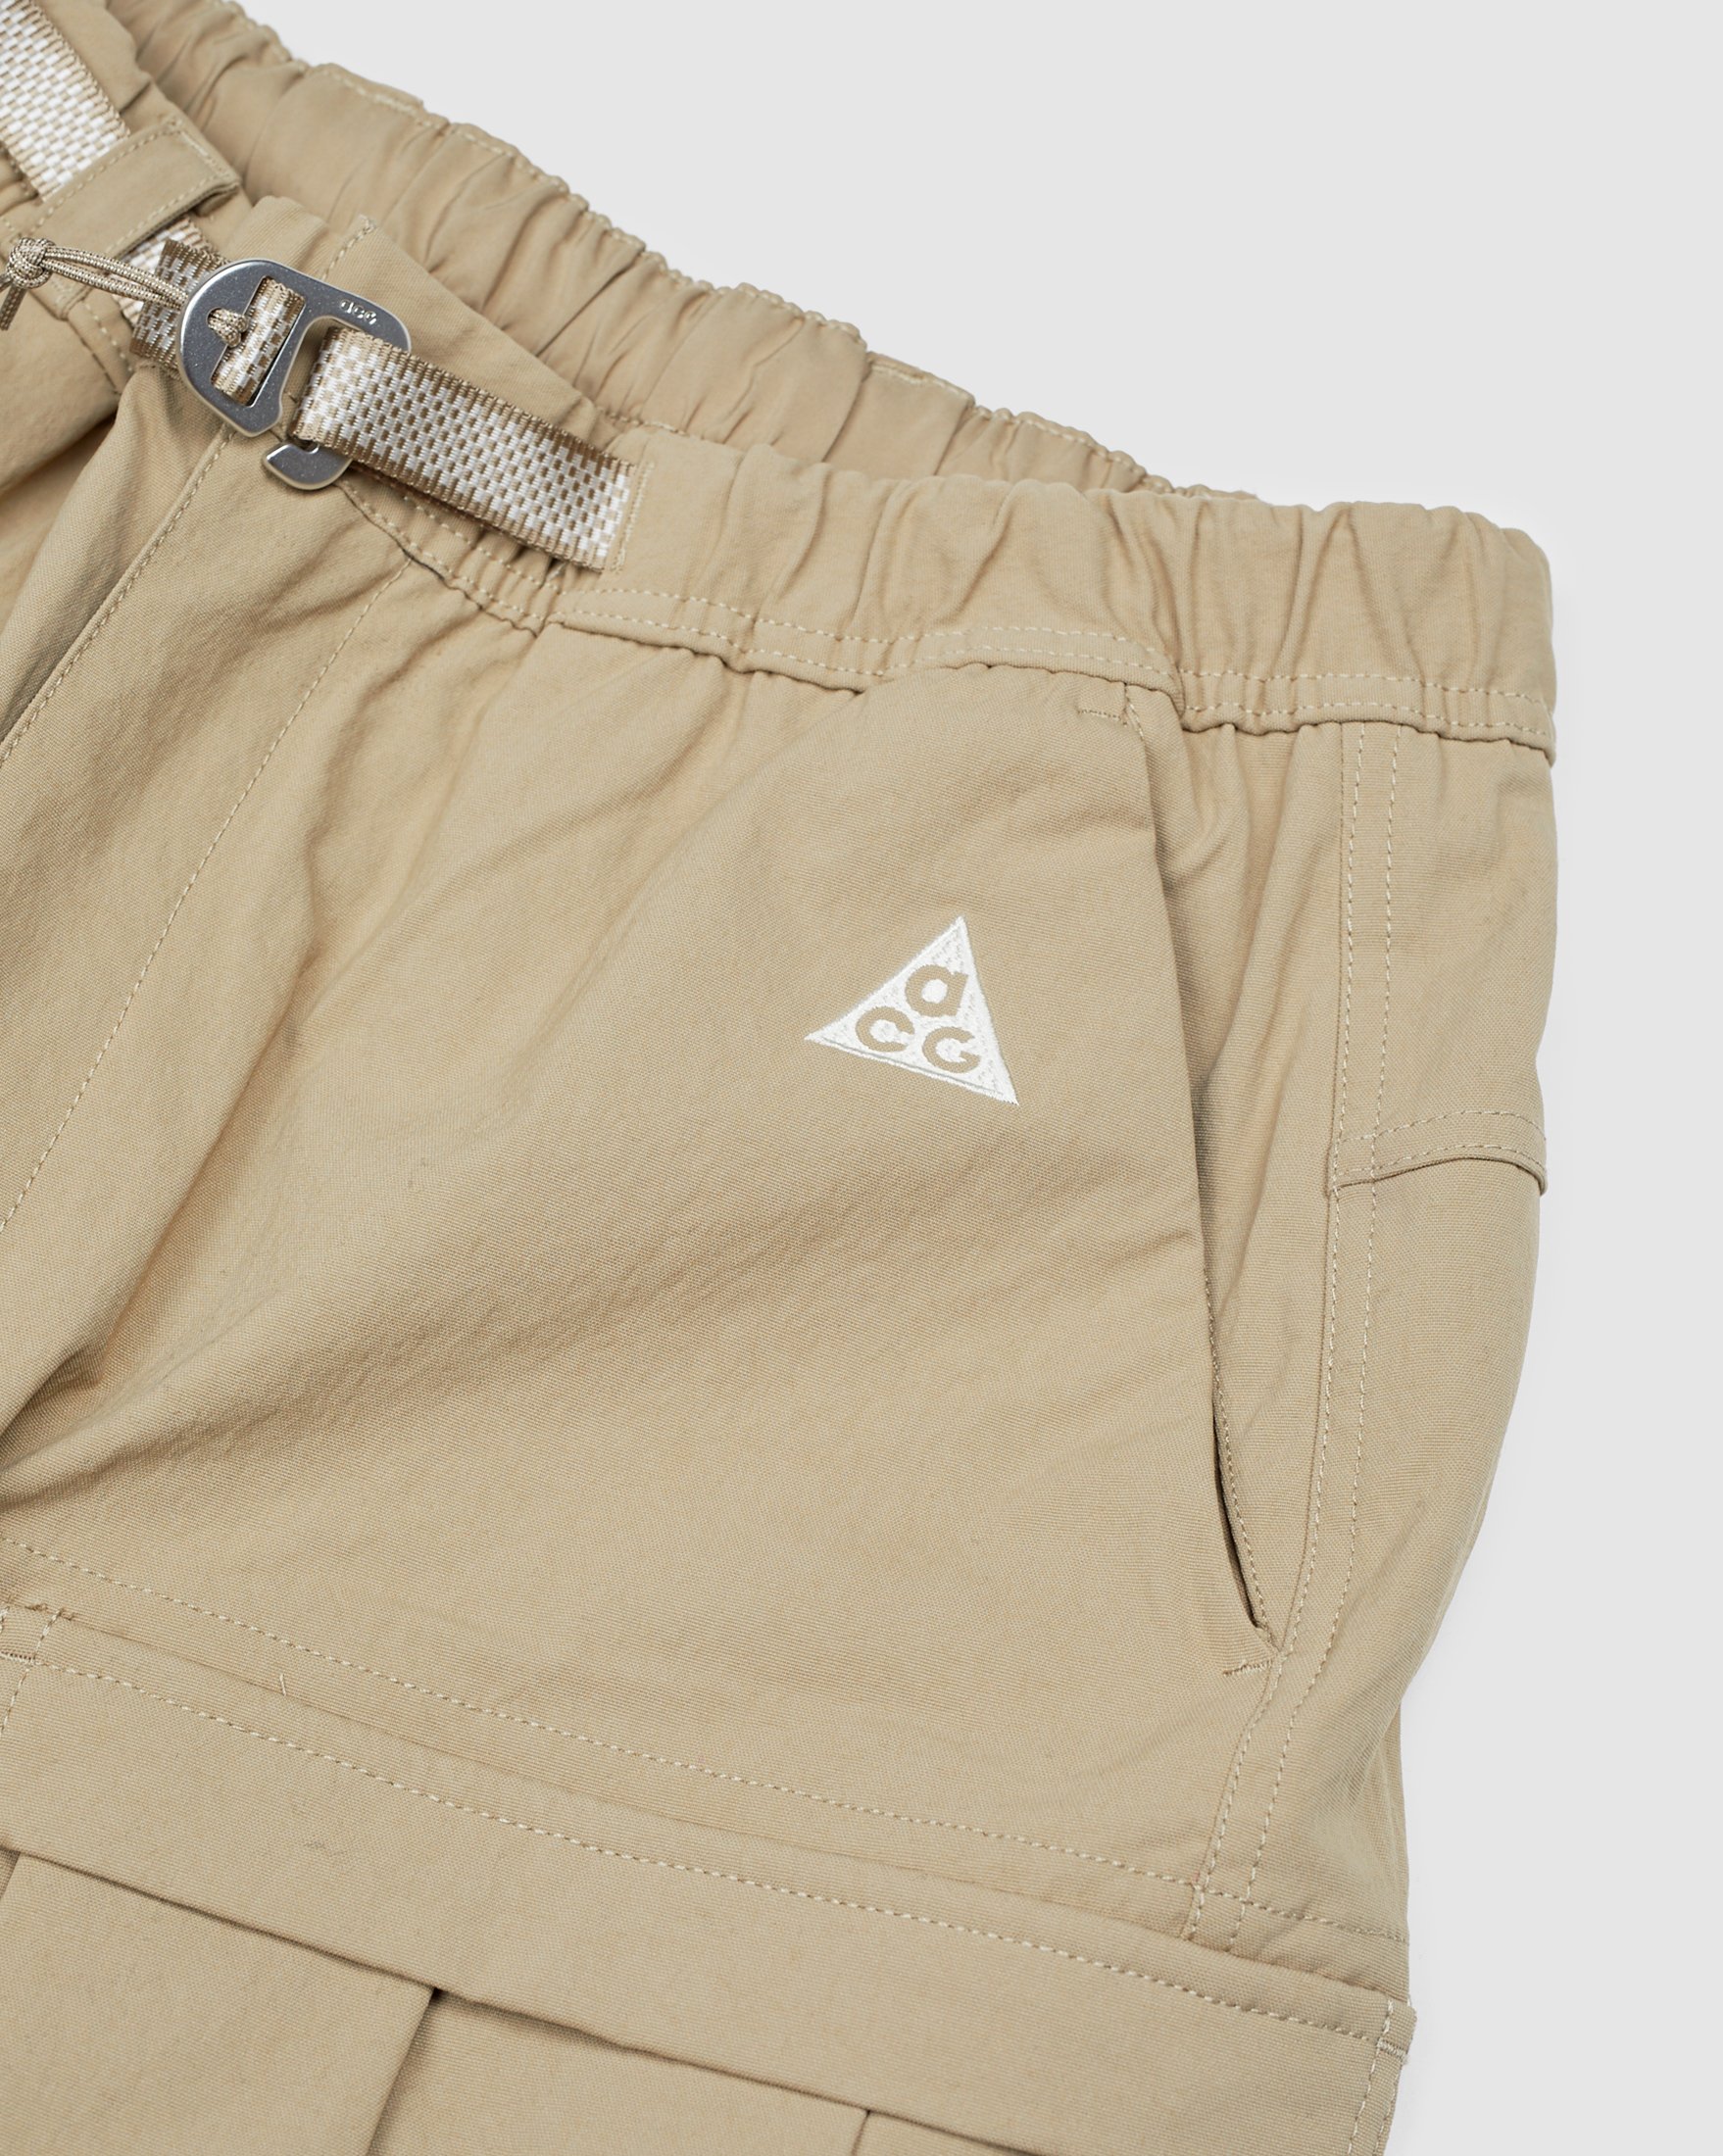 Nike ACG - Smith Summit Men's Cargo Pant Khaki - Clothing - Beige - Image 3